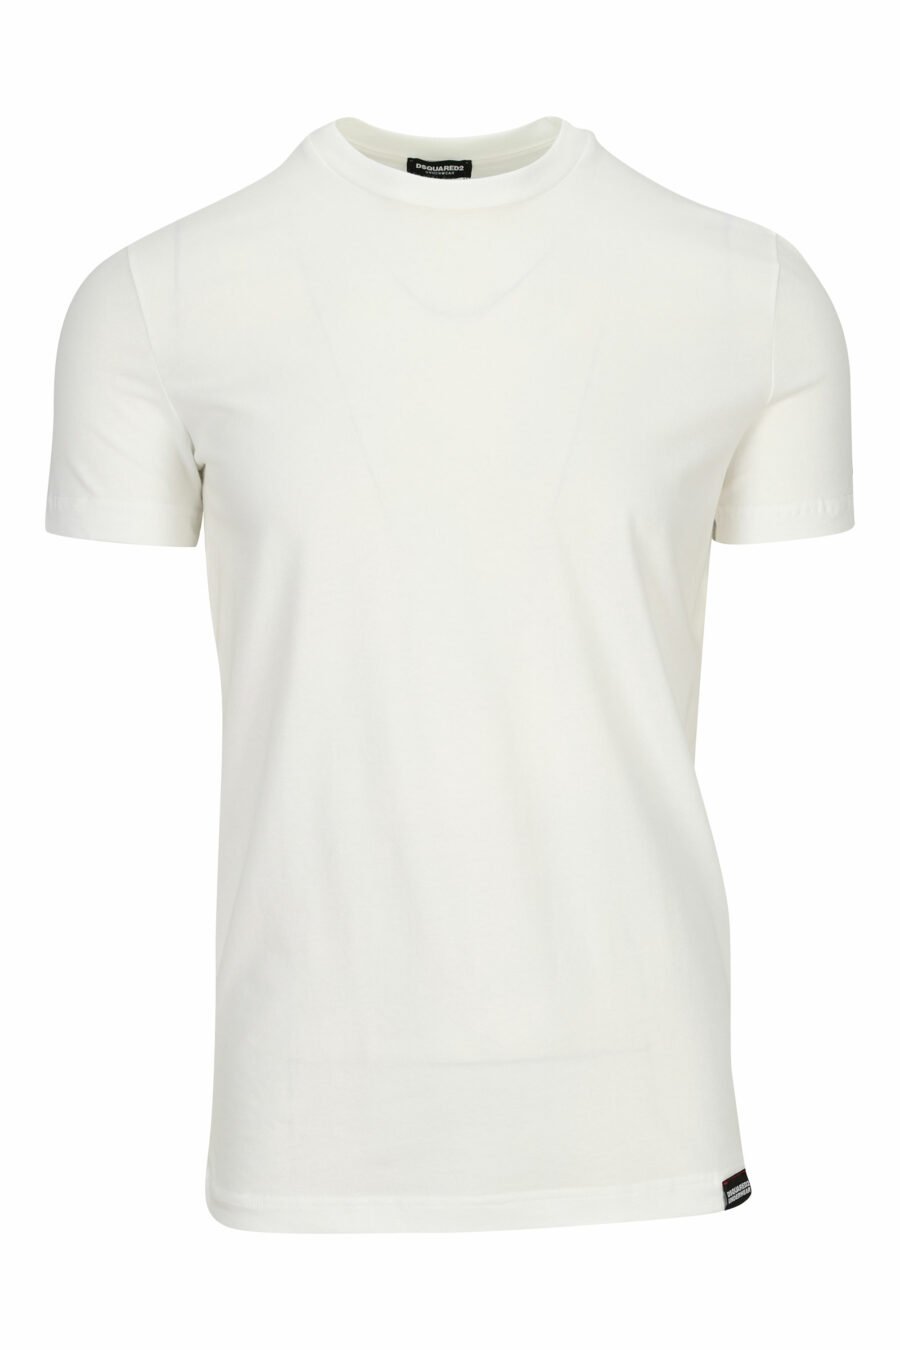 Weißes T-Shirt mit Minilogue-"Unterwäsche" - 8032674811561